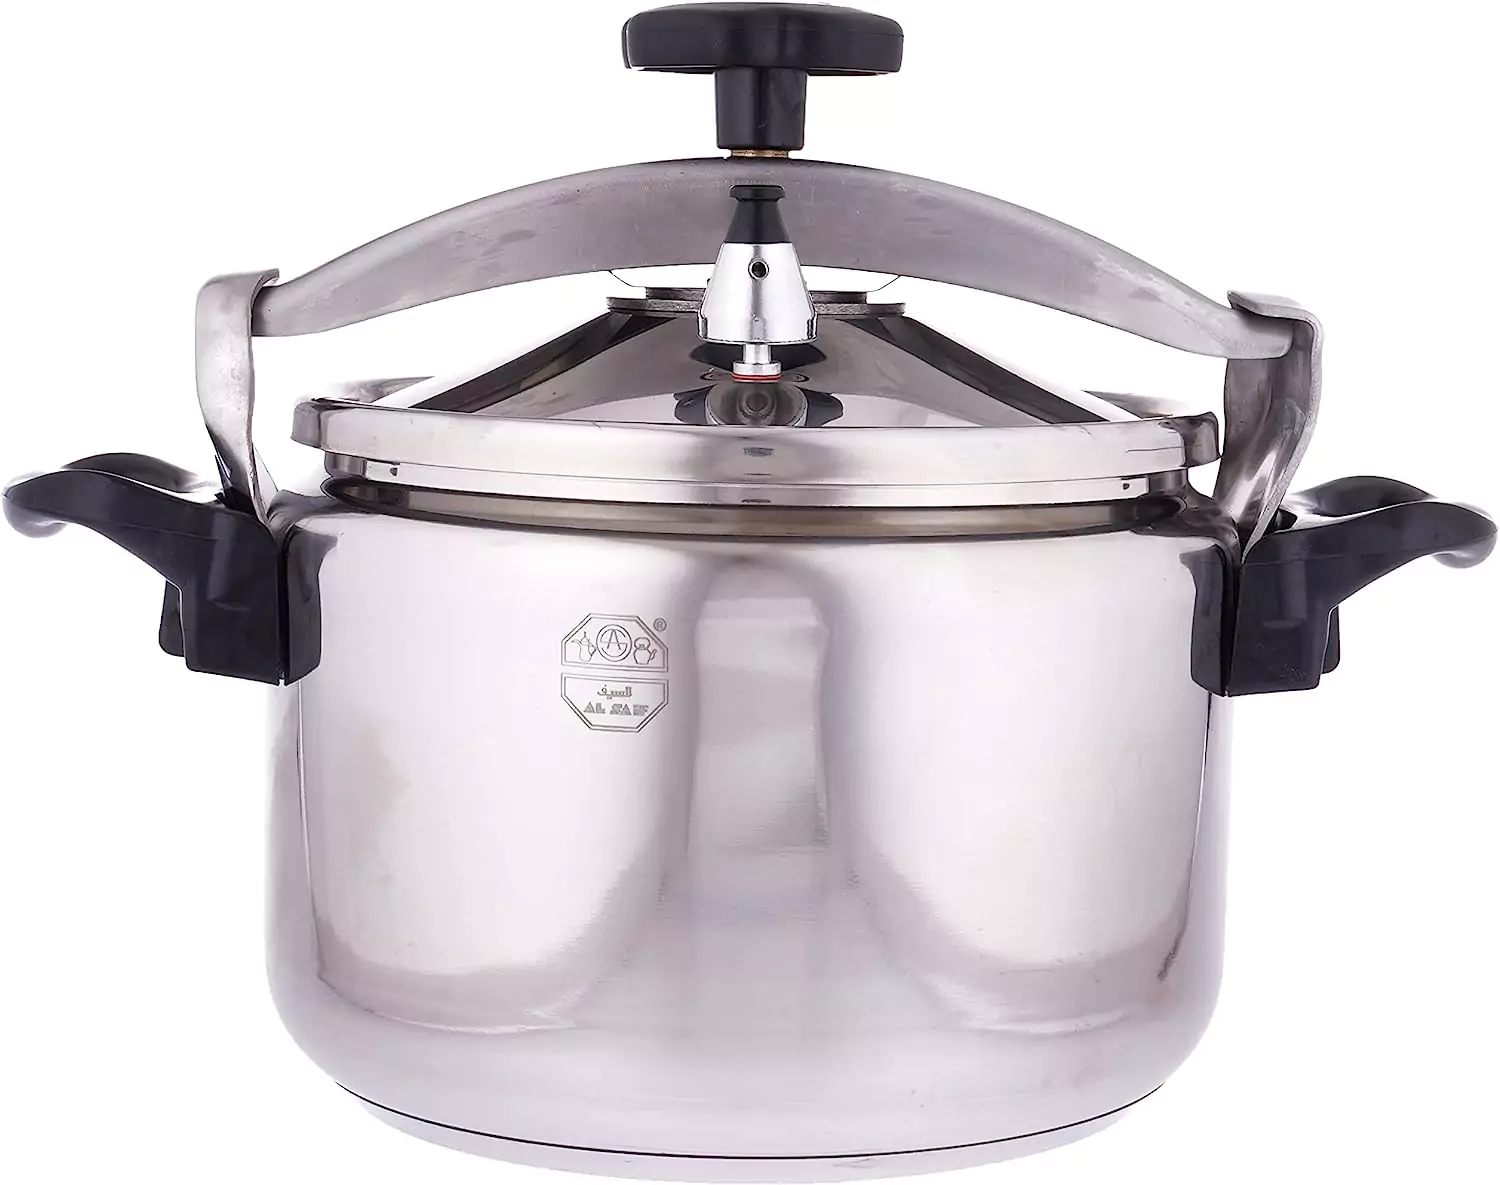 Al Saif pressure cooker, stainless steel, silver, 9 liters